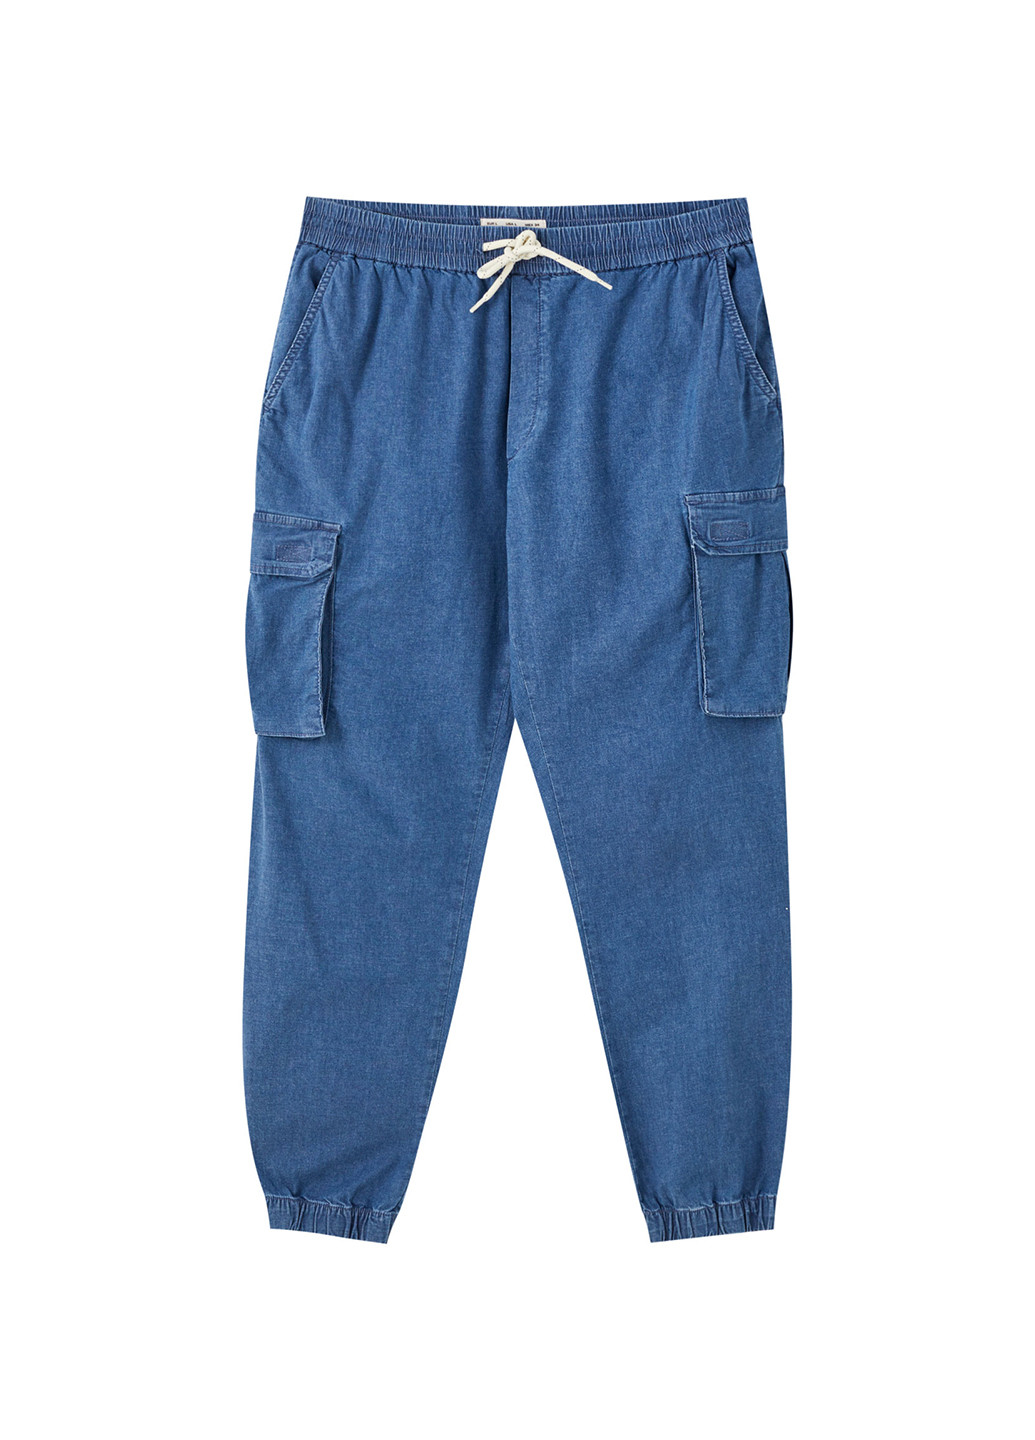 Синие джинсовые демисезонные джоггеры, карго брюки Pull & Bear